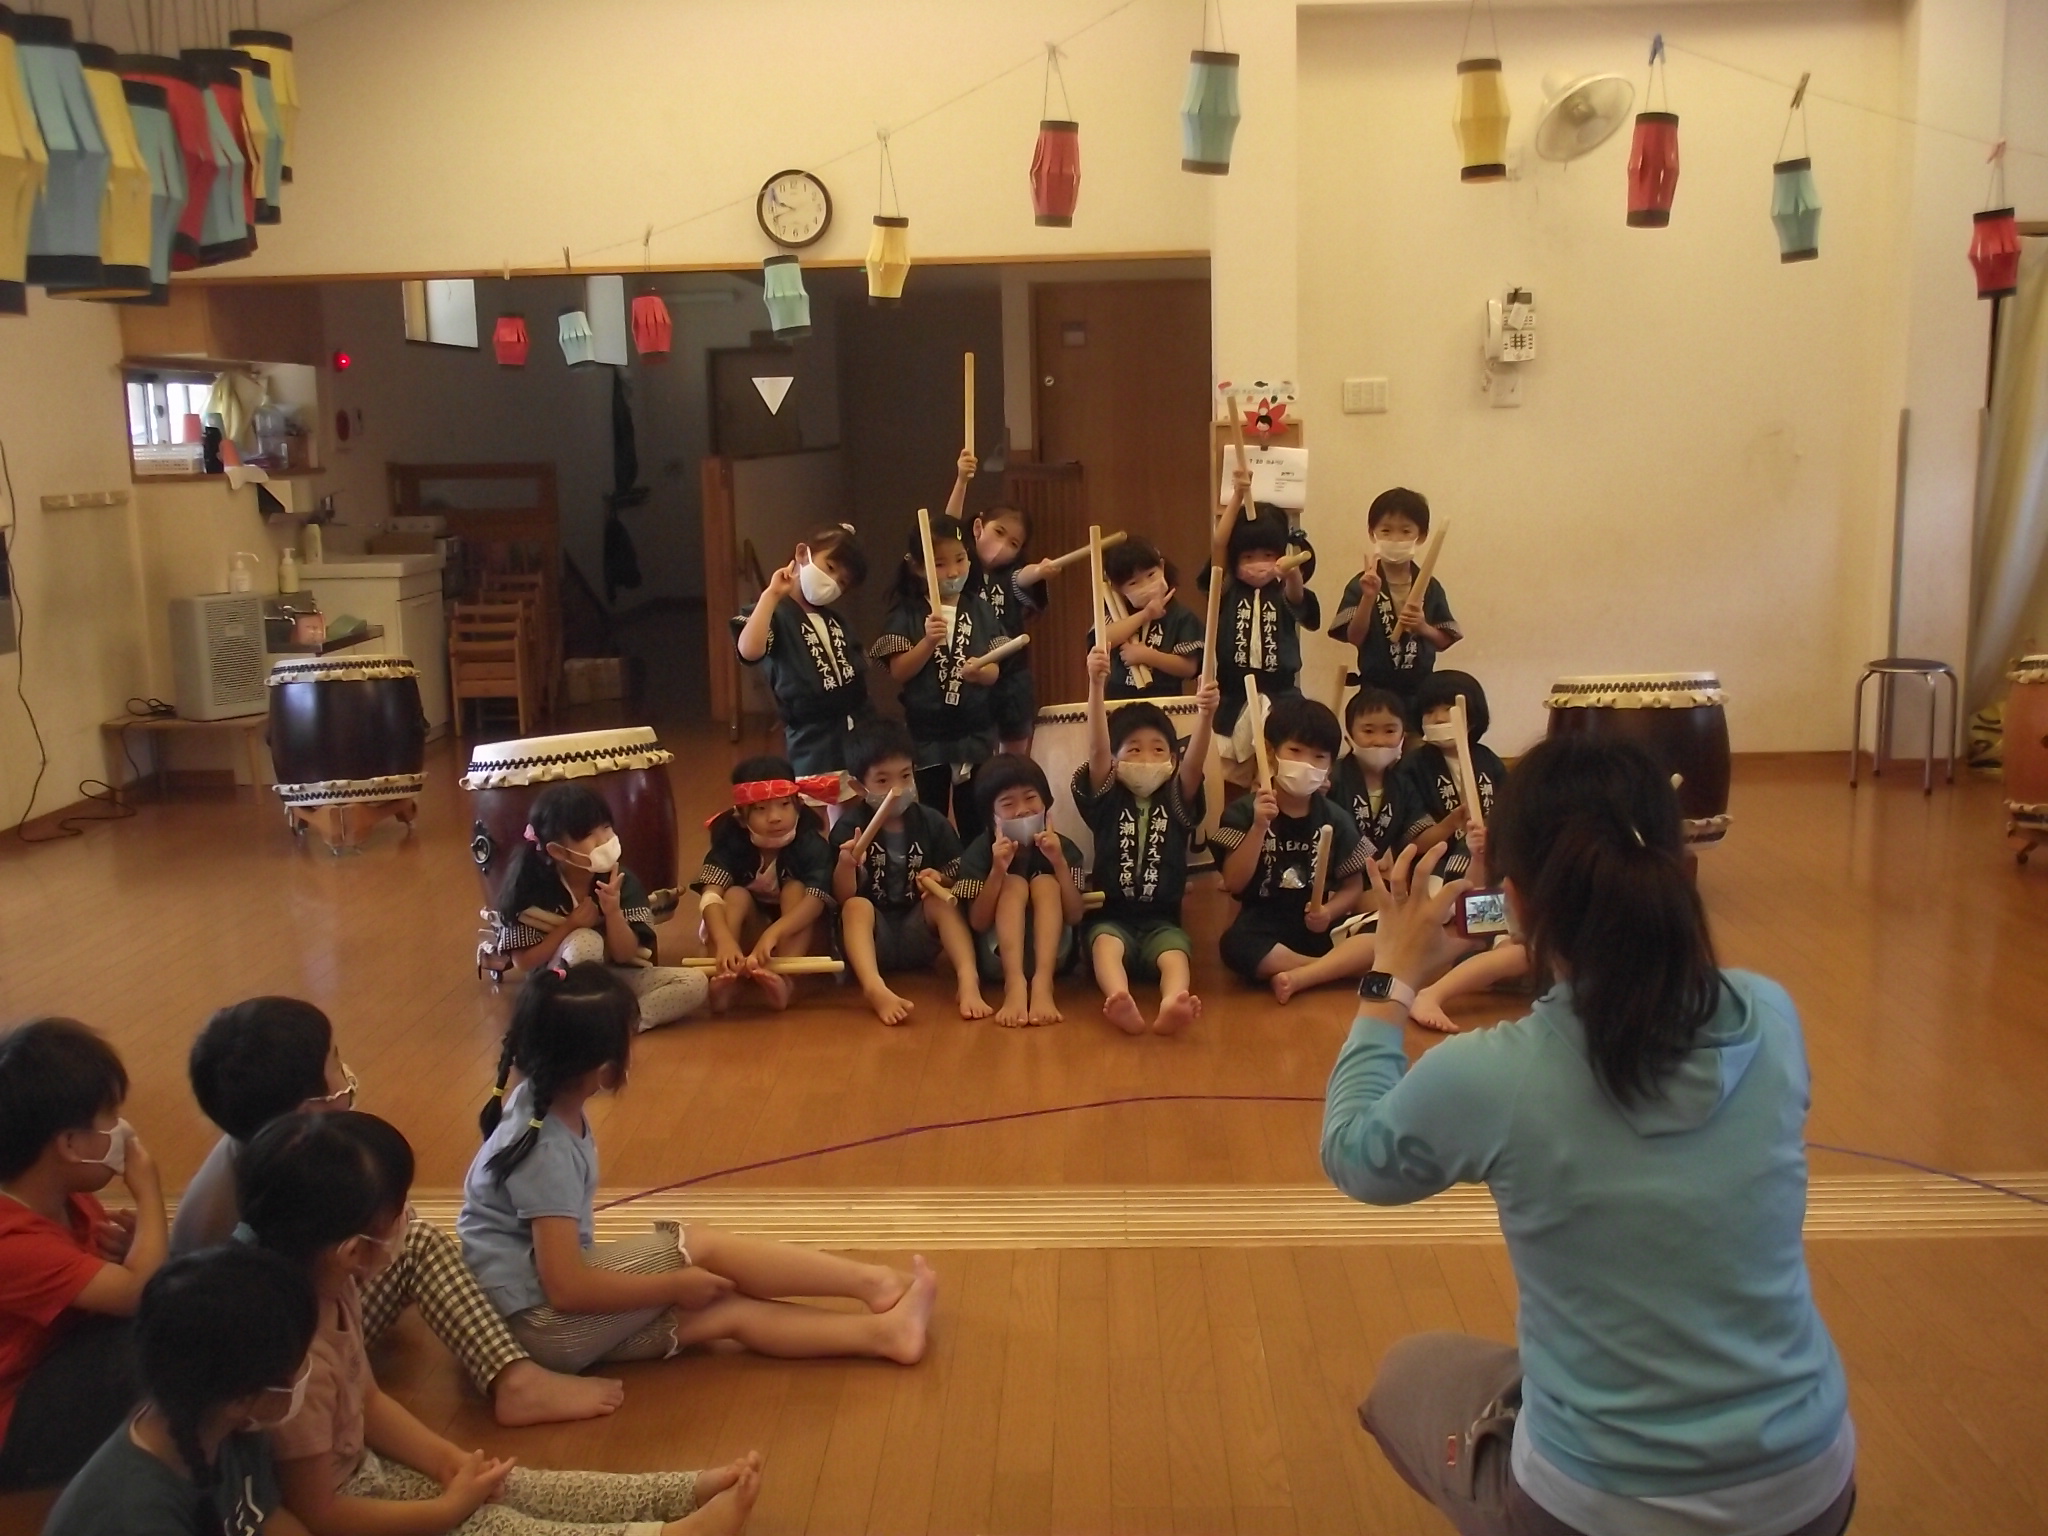 5歳児ぶどう組さんが練習してきた太鼓を披露する日。